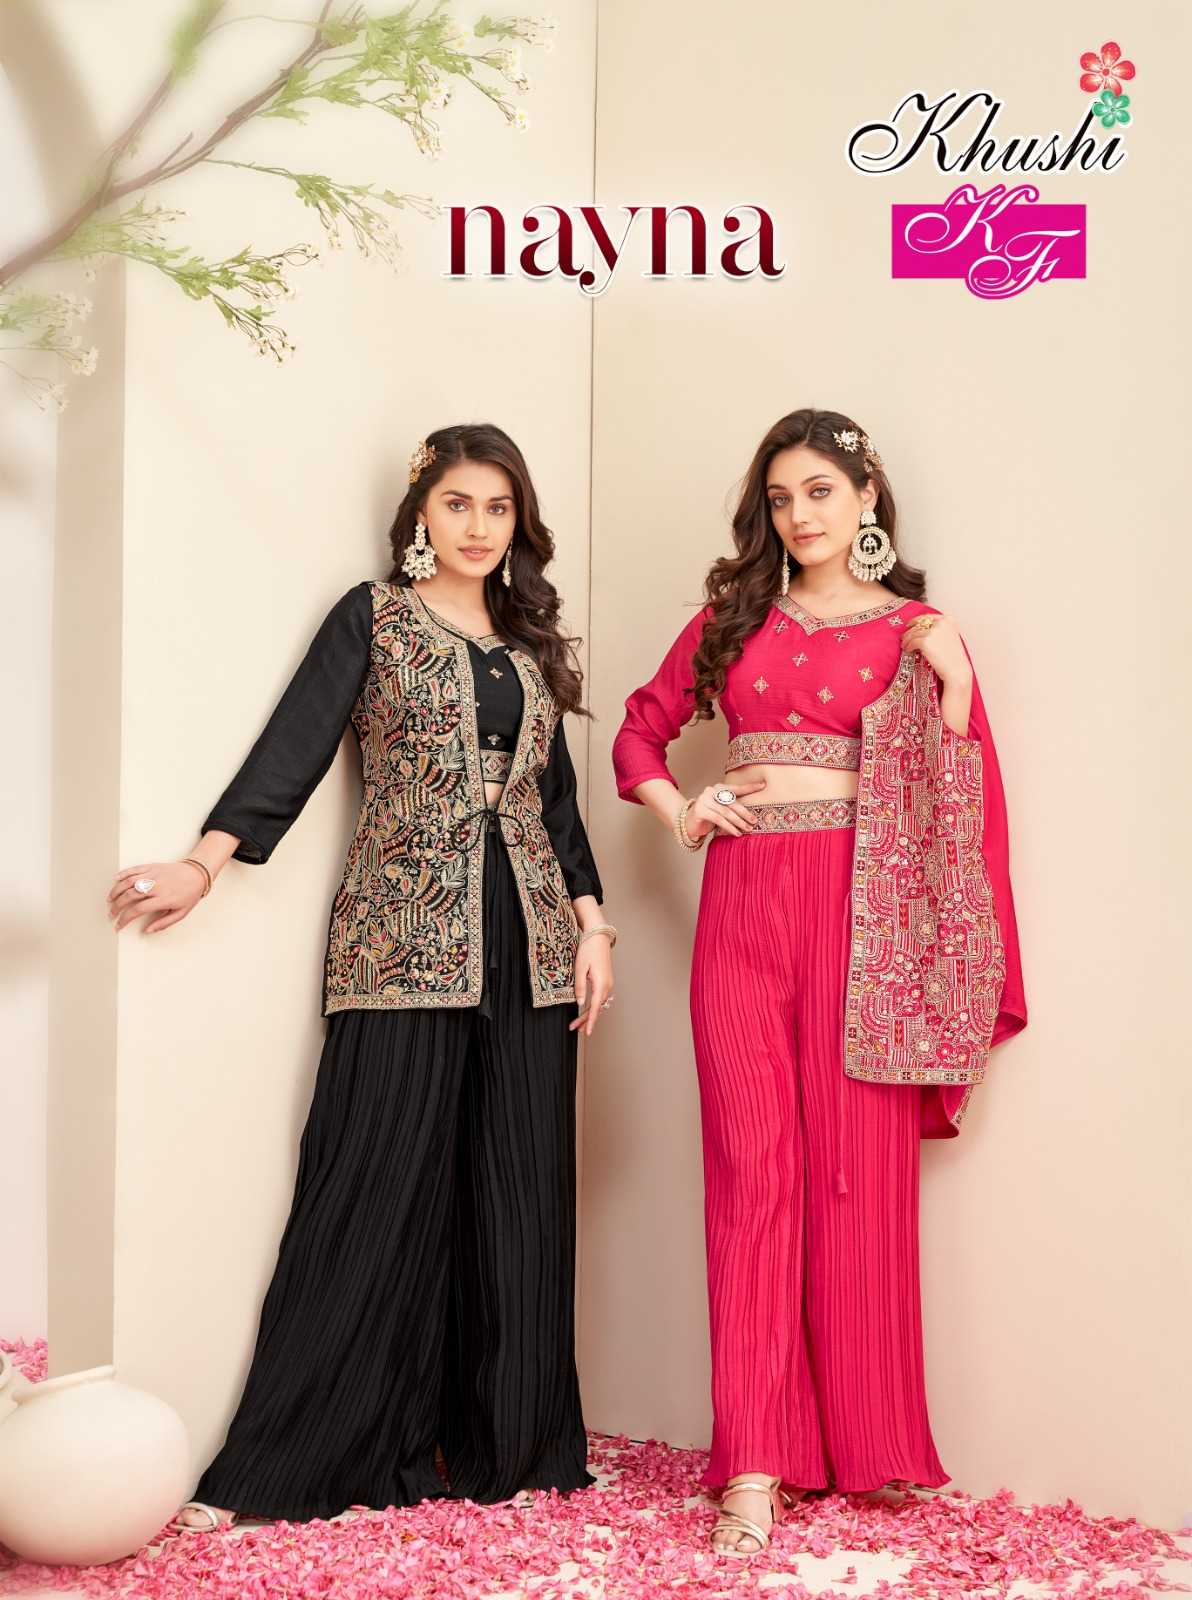 nayna by khushi fashion full stitch shrug jacket set with palazzo set dress